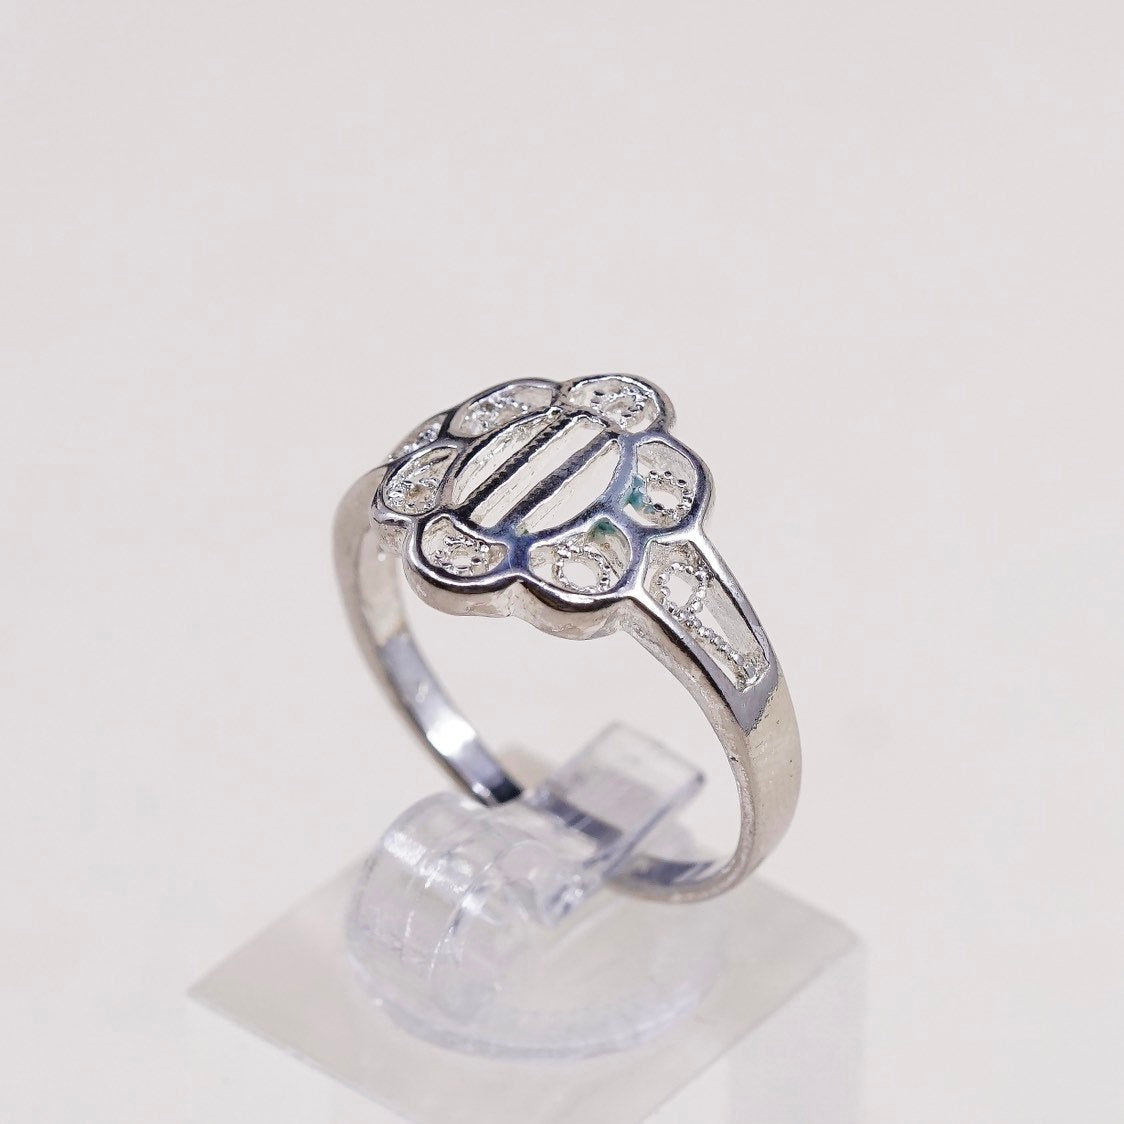 sz 9.25, vtg sterling silver handmade ring, 925 flower band w/ filigree